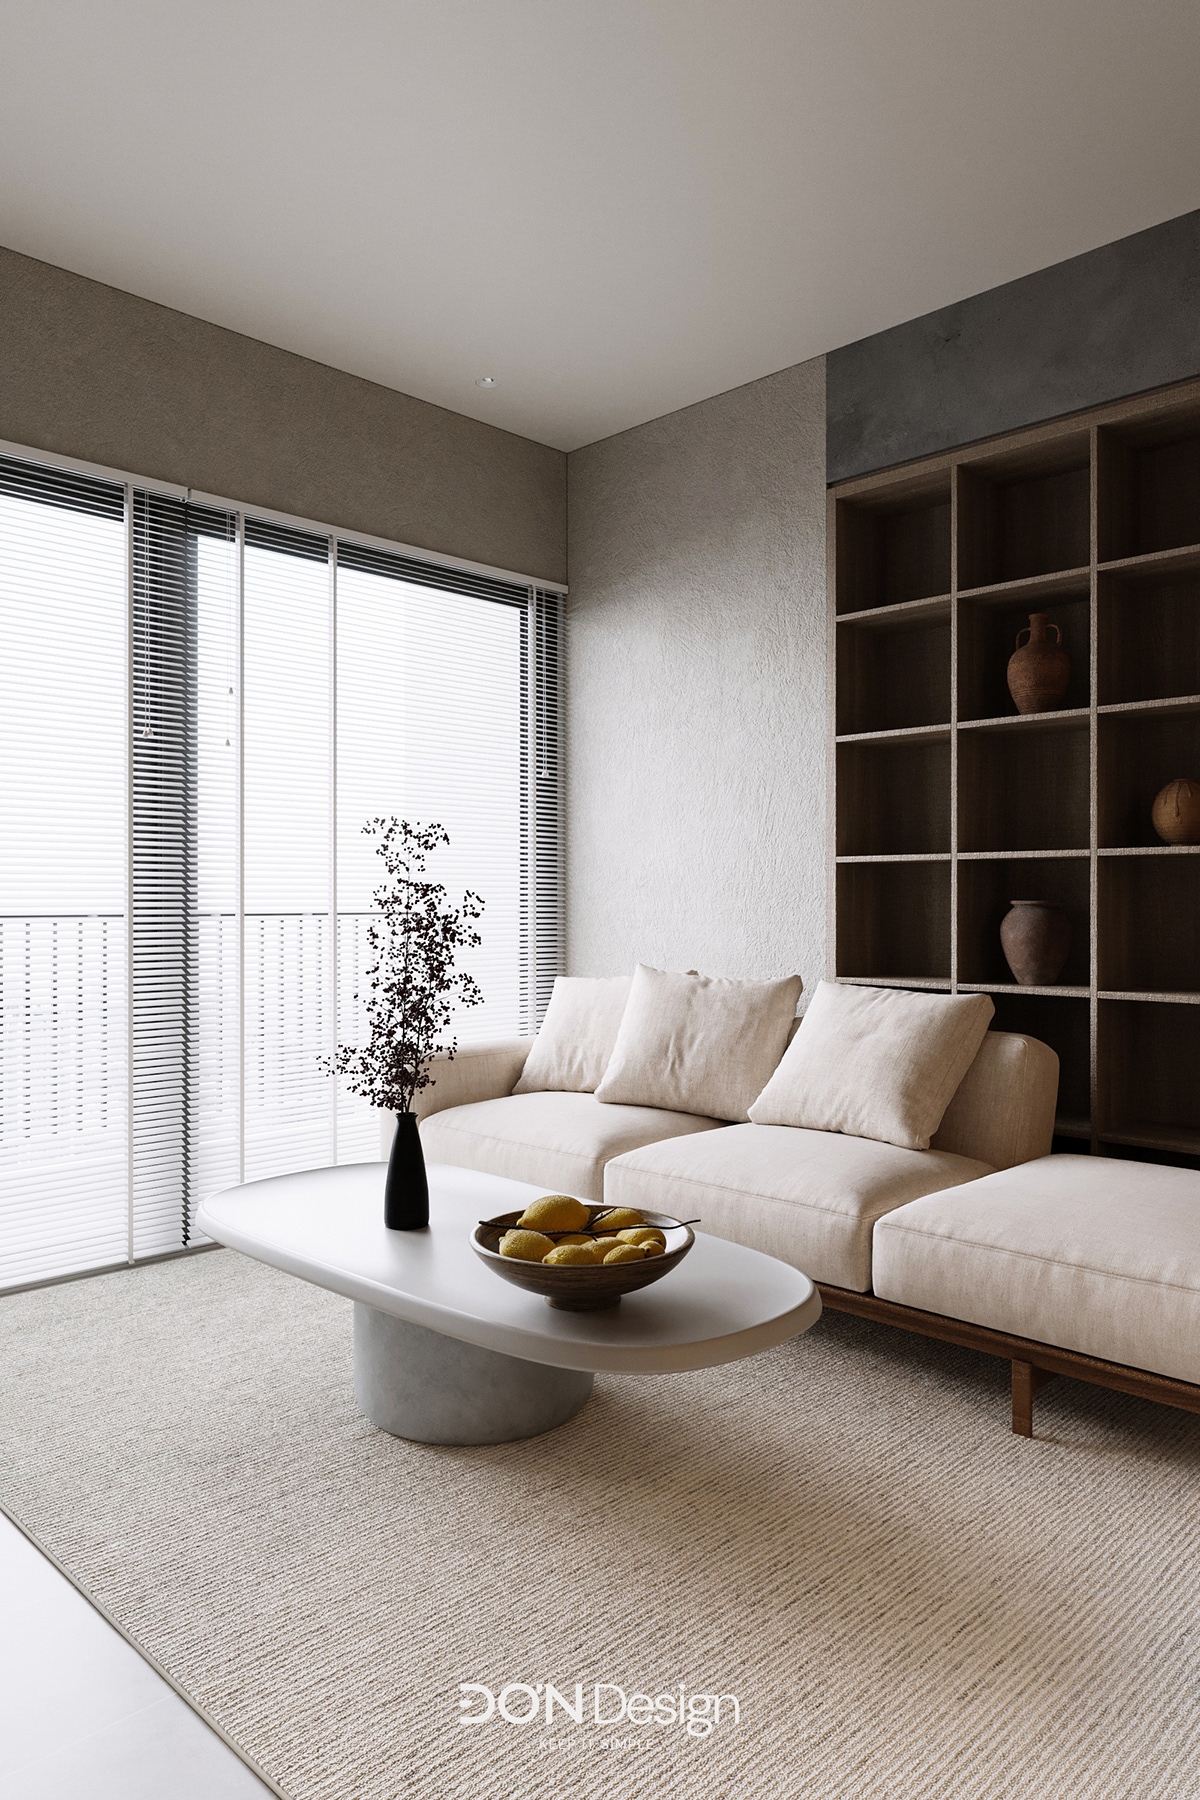 furniture interior design  architecture visualization